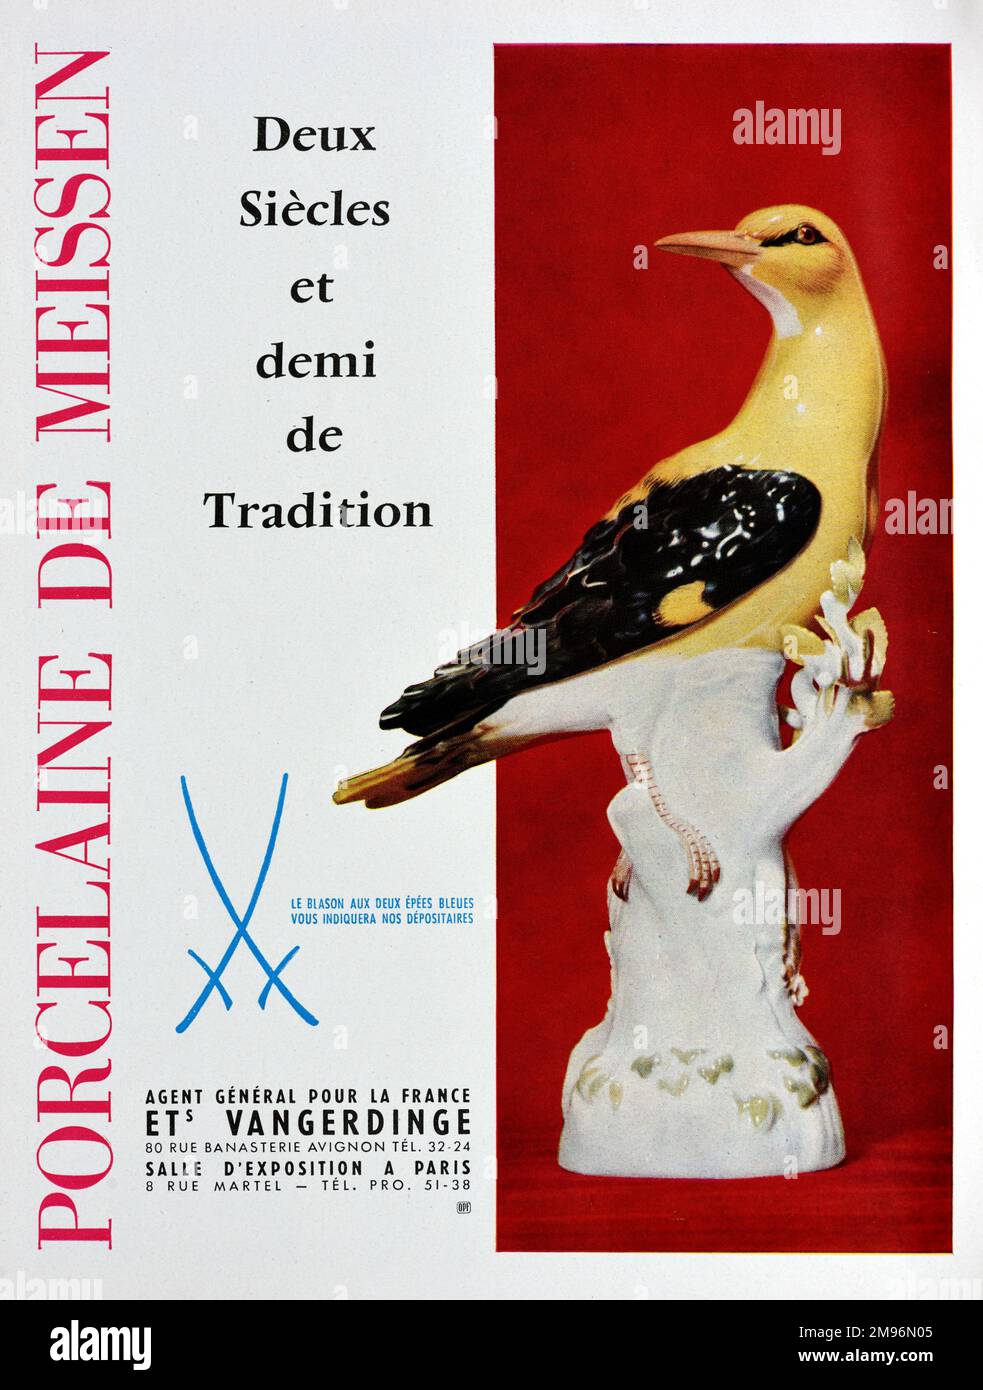 Vintage o antiguo anuncio, publicidad, publicidad o ilustración para porcelana de Meissen o Meissen China 1957. Con figura de porcelana de pájaro amarillo, posiblemente un oriole. Foto de stock